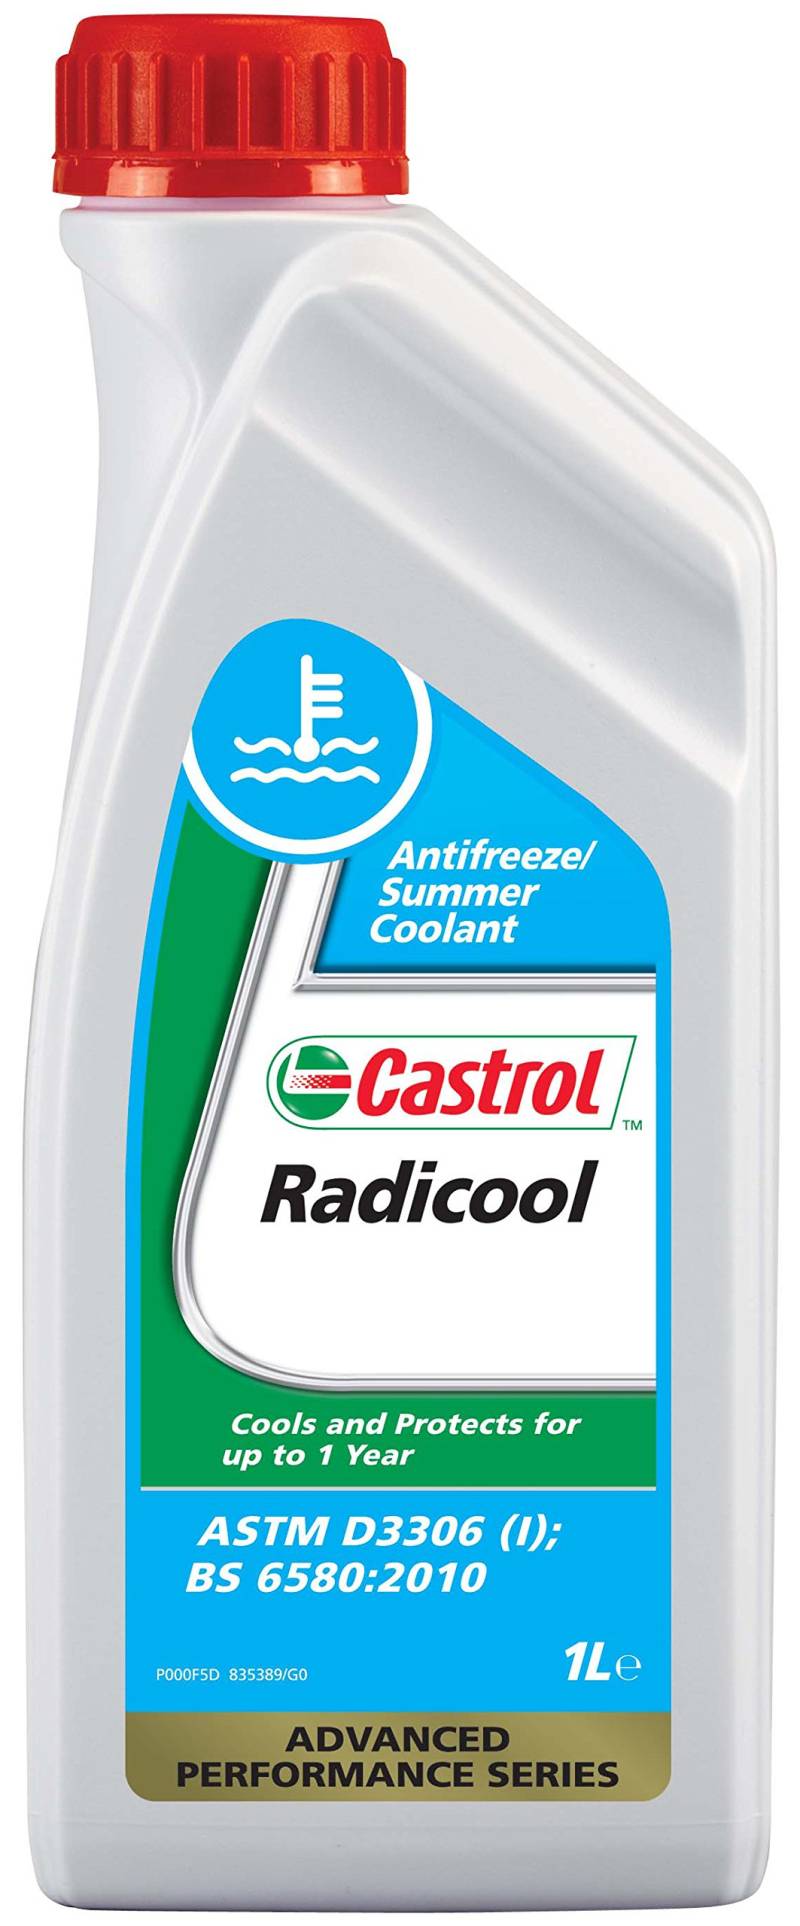 Castrol 150 FFA Radicool, 1 Liter von Castrol